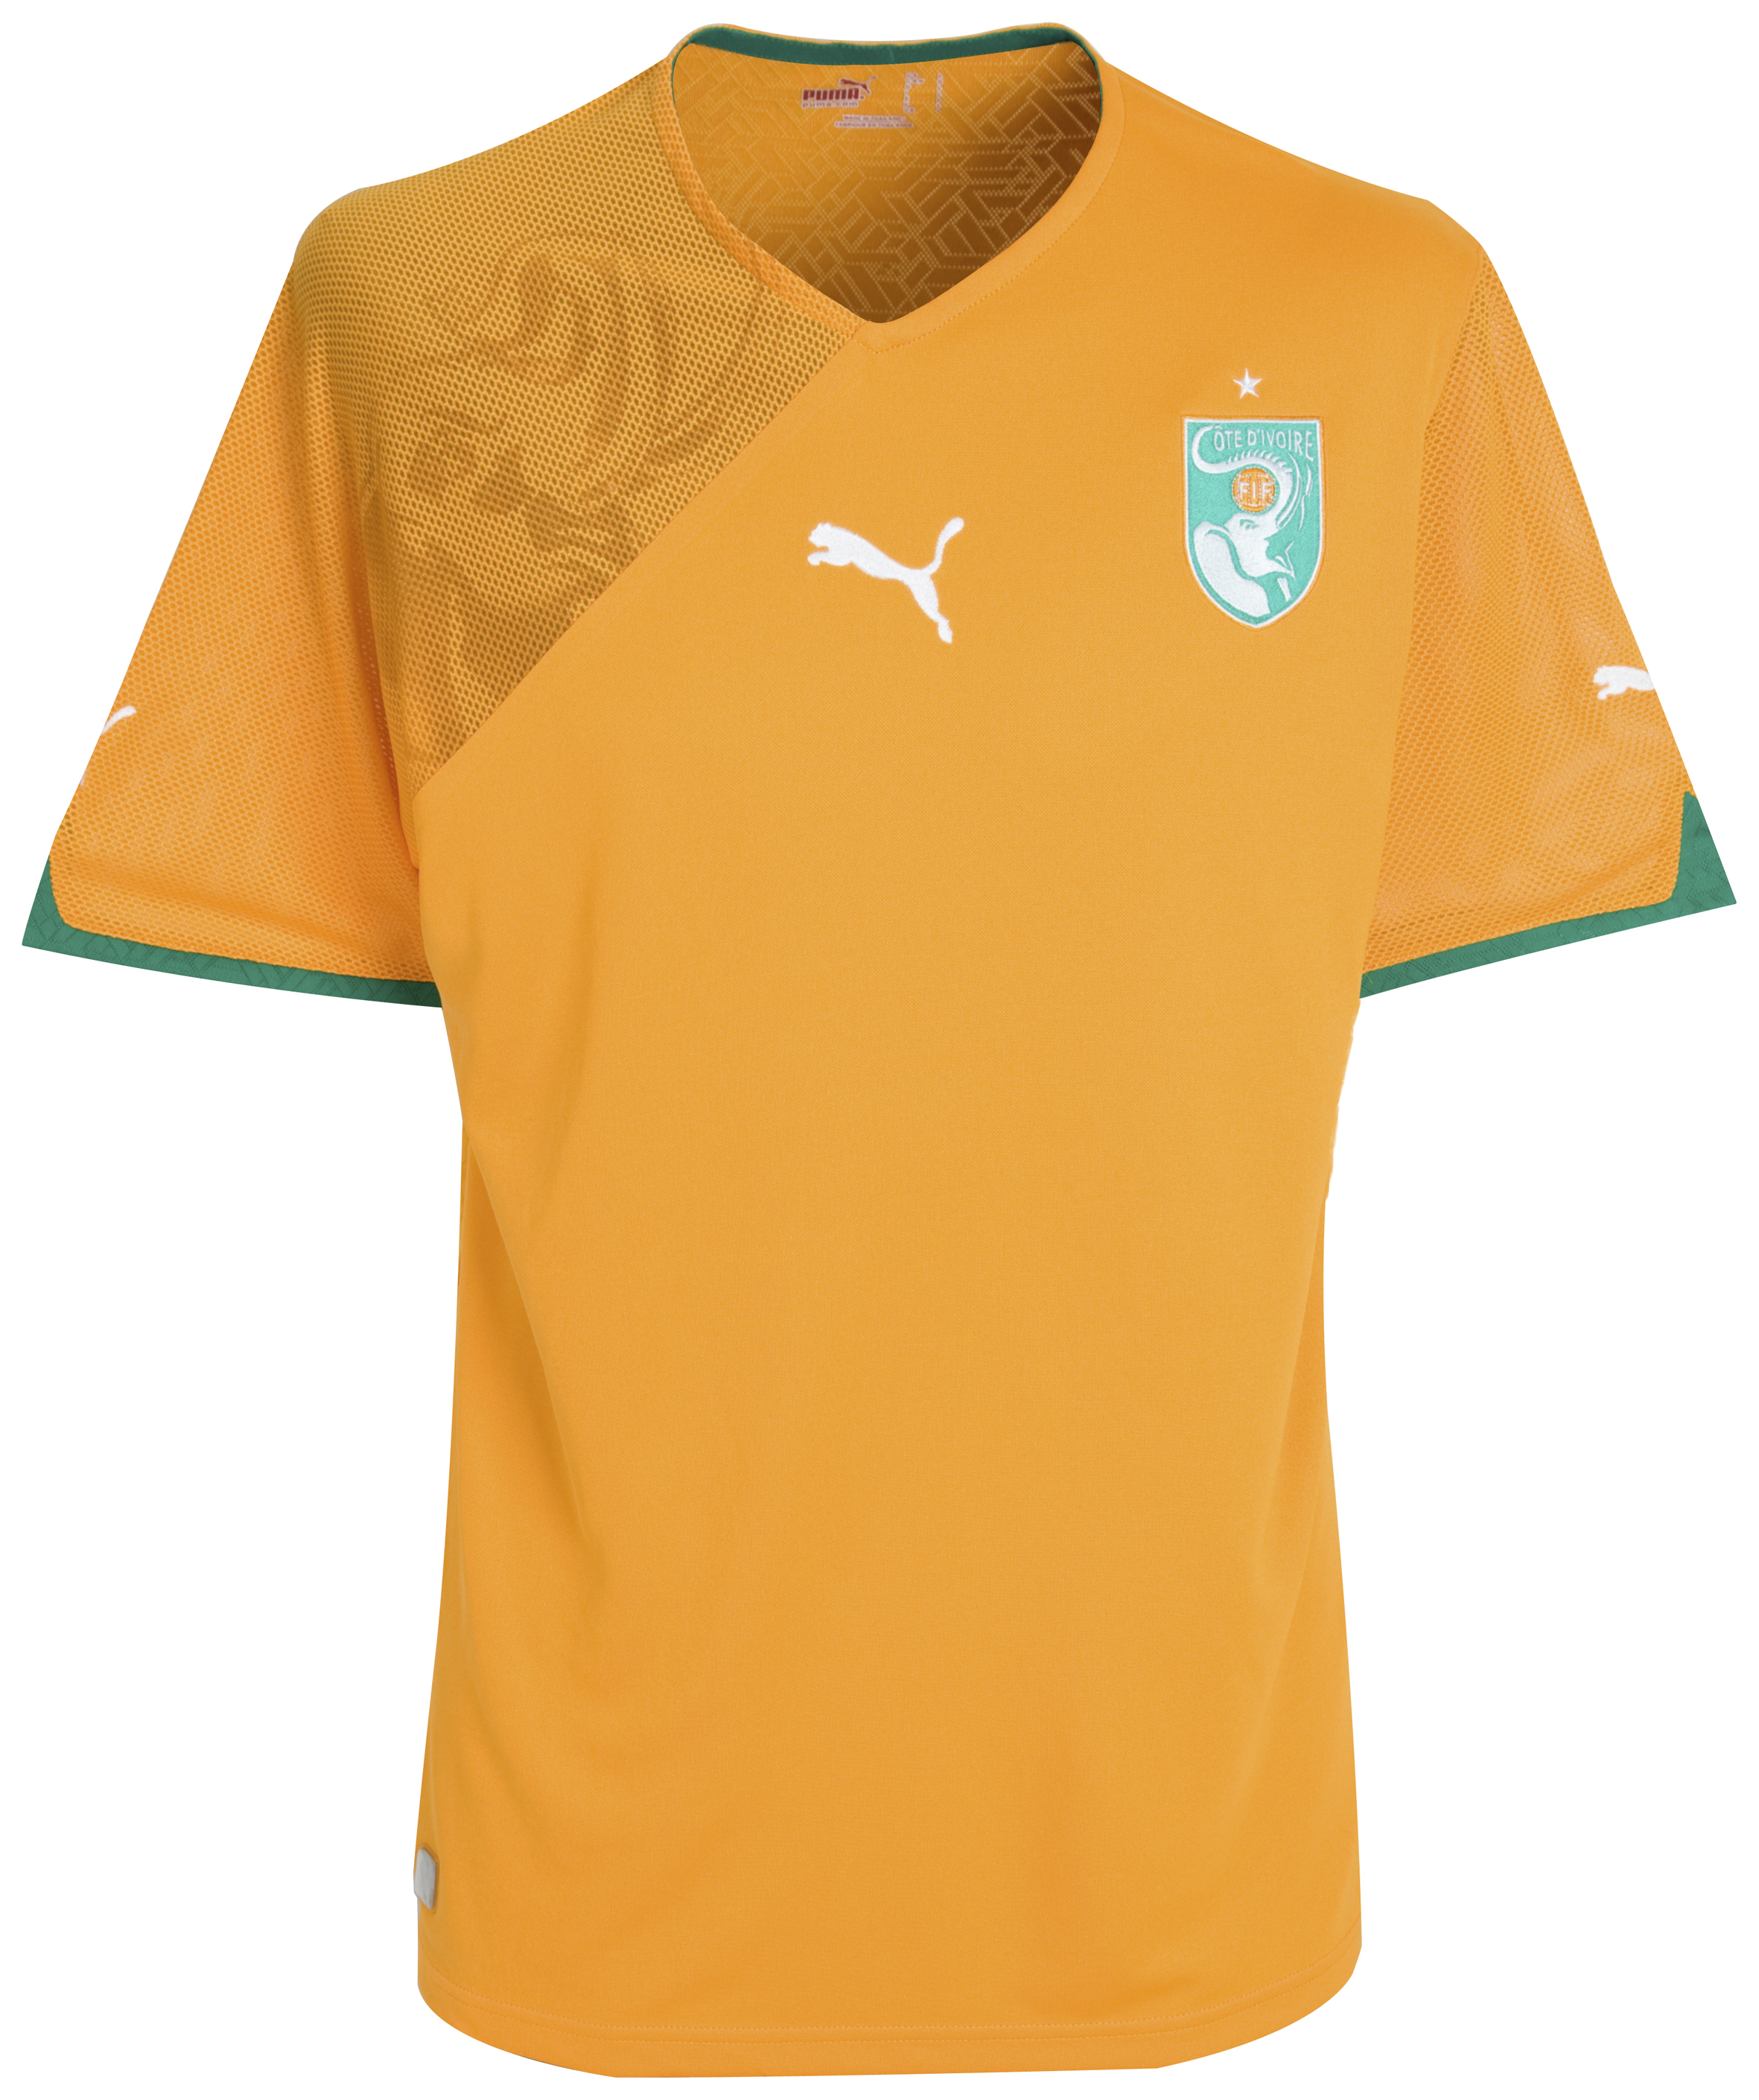 الملابس النهائيه لكأس العالم (2010)بجنوب افريقيا Kb-60875